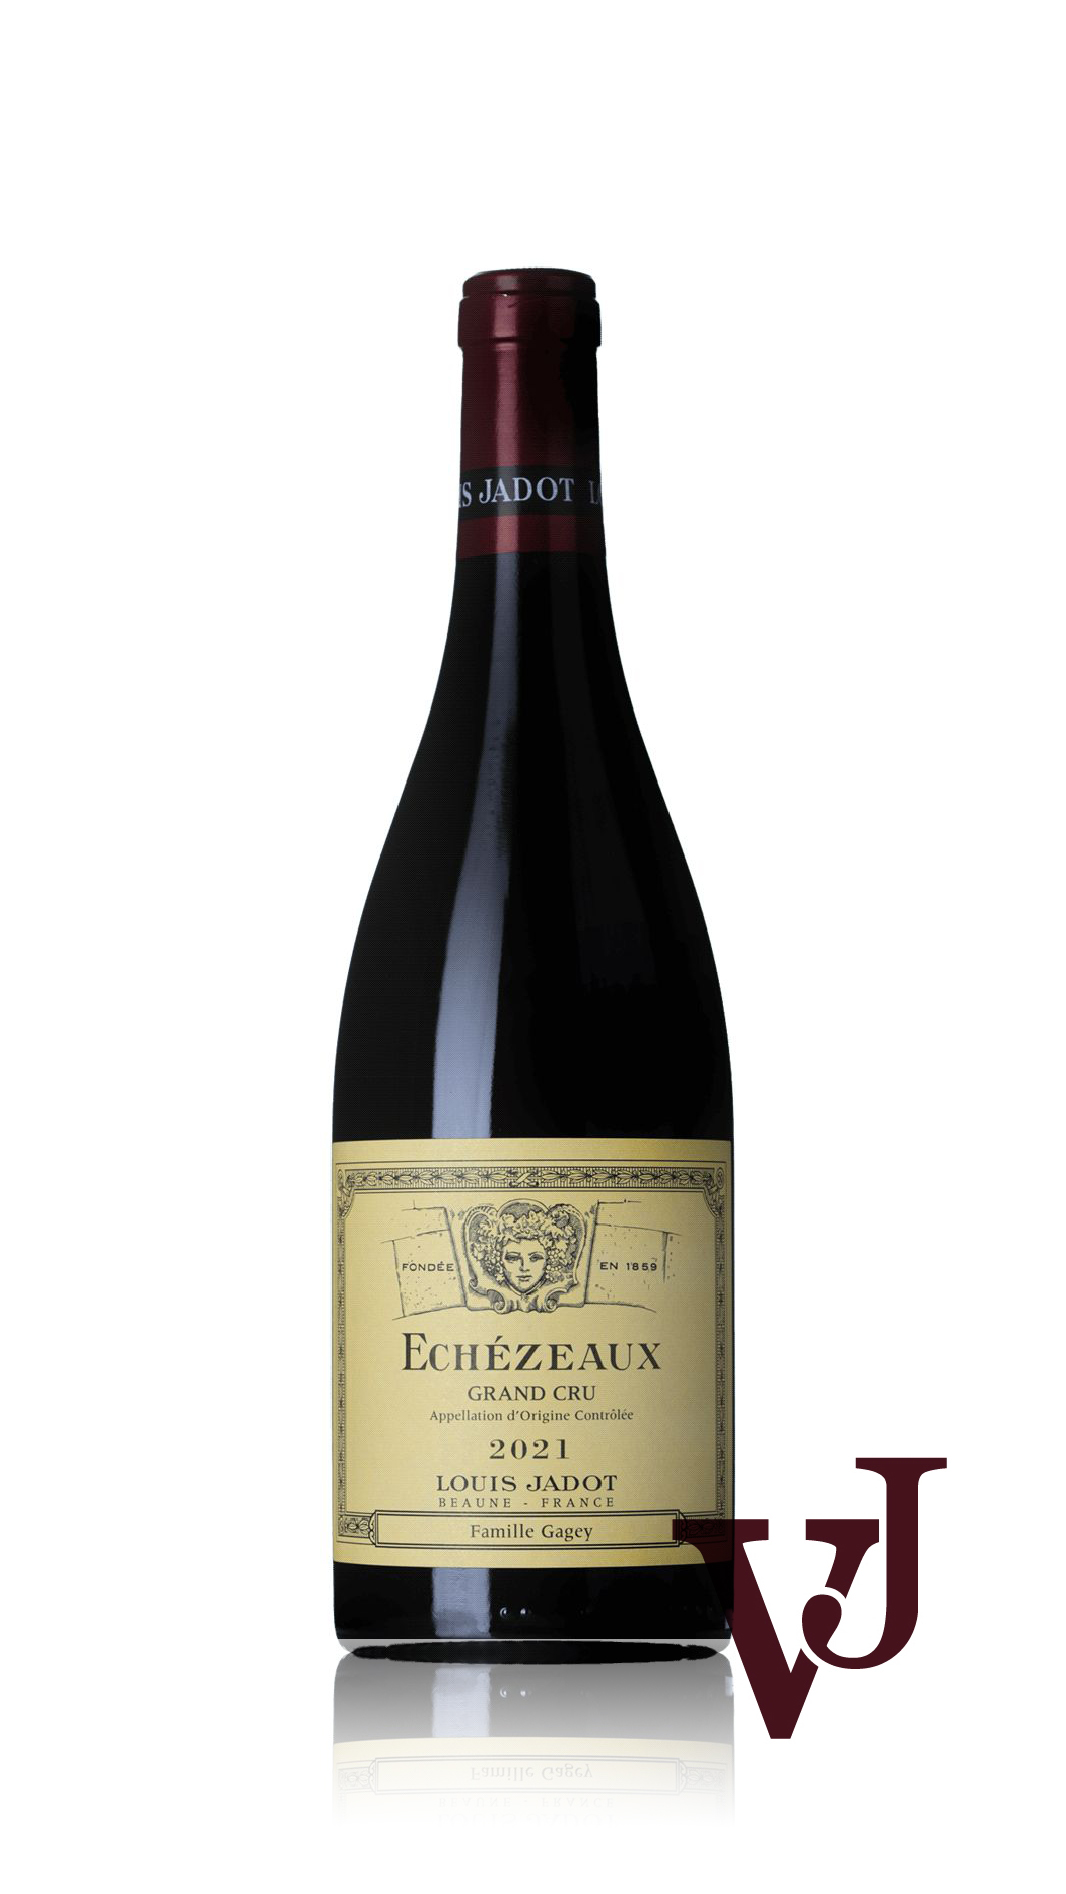 Rött Vin - Echezeaux Grand Cru Domaine Gagey Louis Jadot 2021 artikel nummer 9351701 från producenten Maison Louis Jadot/Domaine Gagey från Frankrike